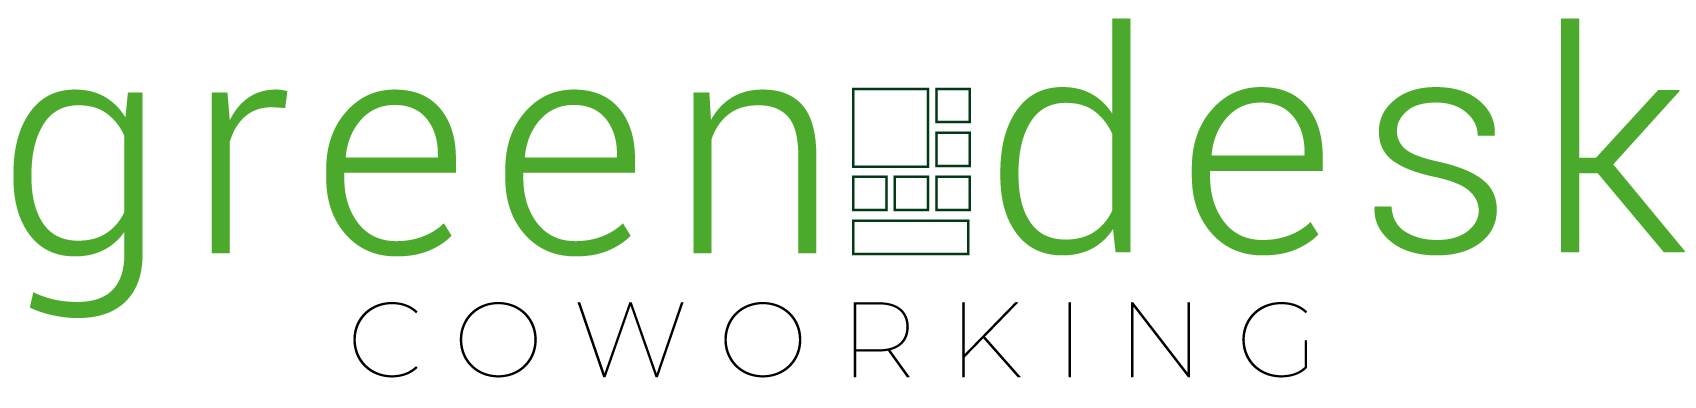 logo-greendesk